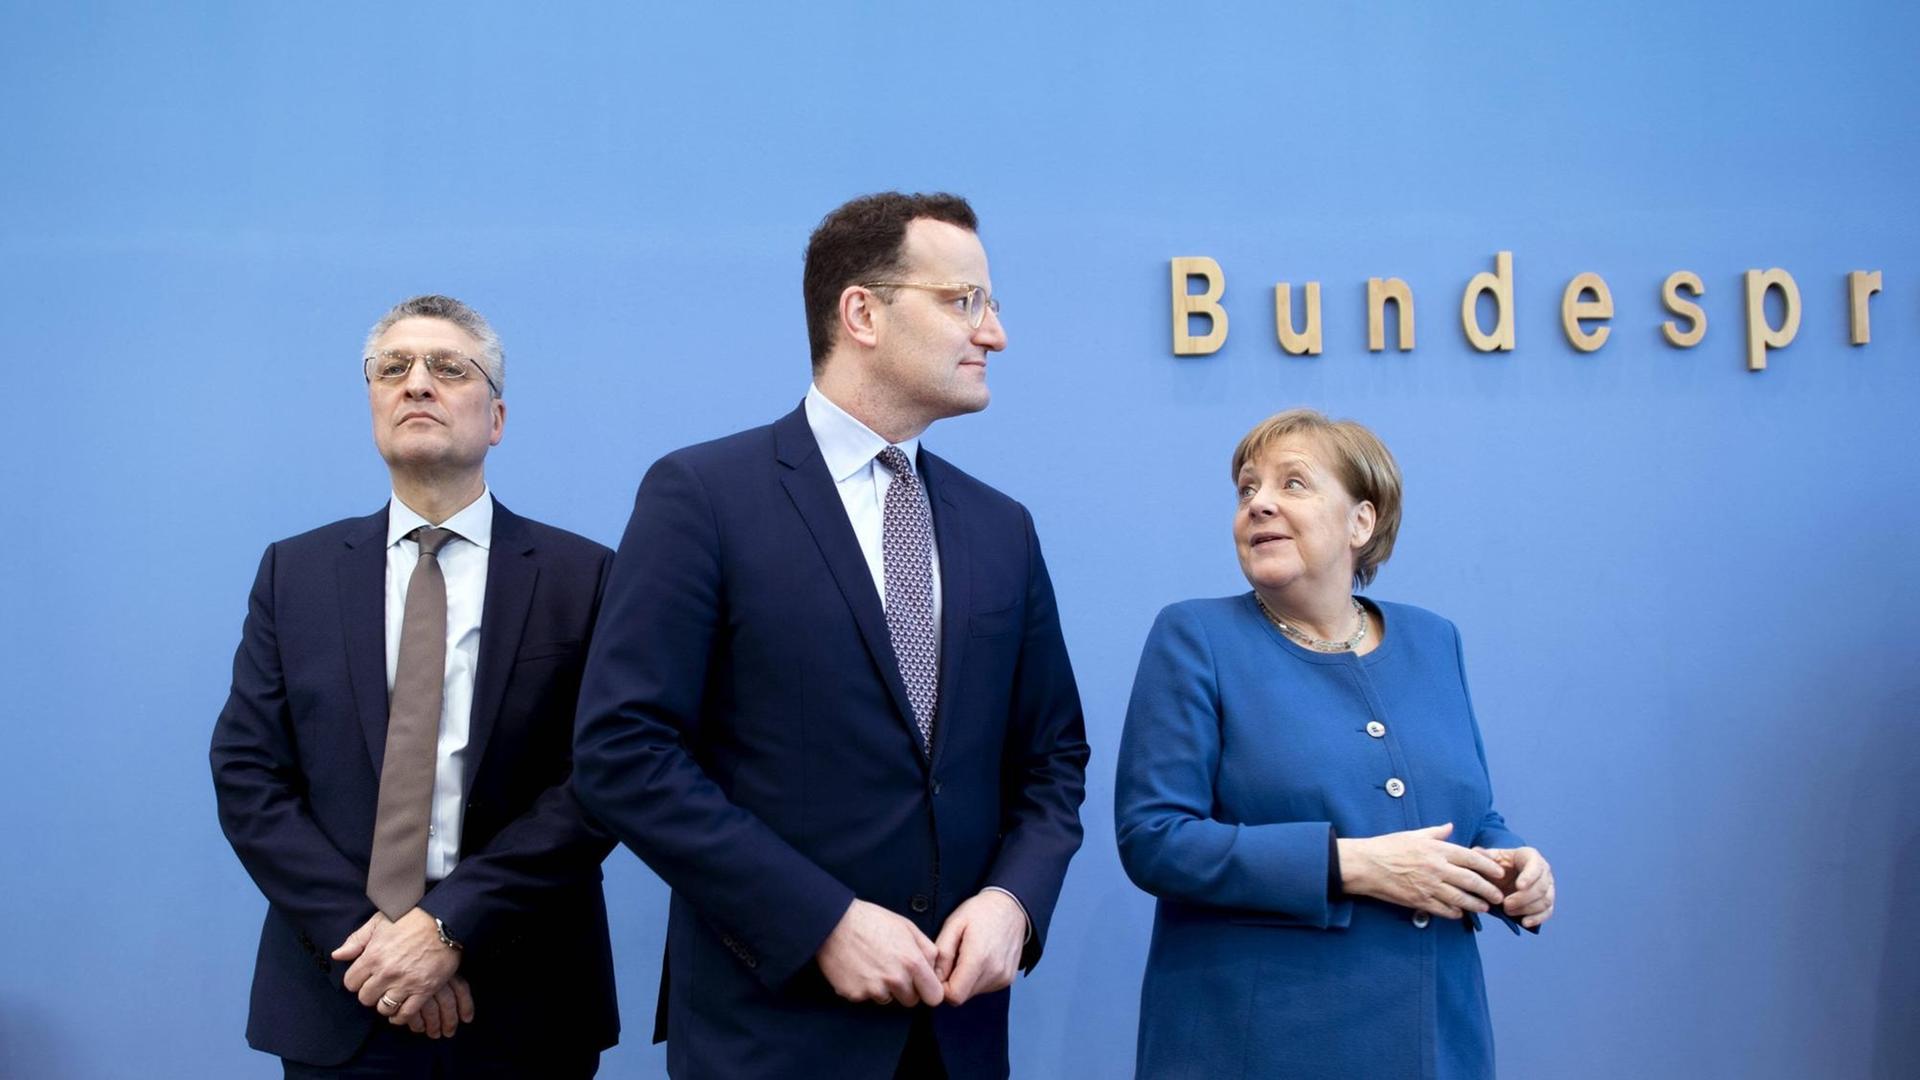 Bundeskanzlerin Angela Merkel (CDU), Bundesgesundheitsminister Jens Spahn (CDU) und der Präsident des Robert-Koch-Instituts, Lothar Wieler, bei einer Pressekonferenz.